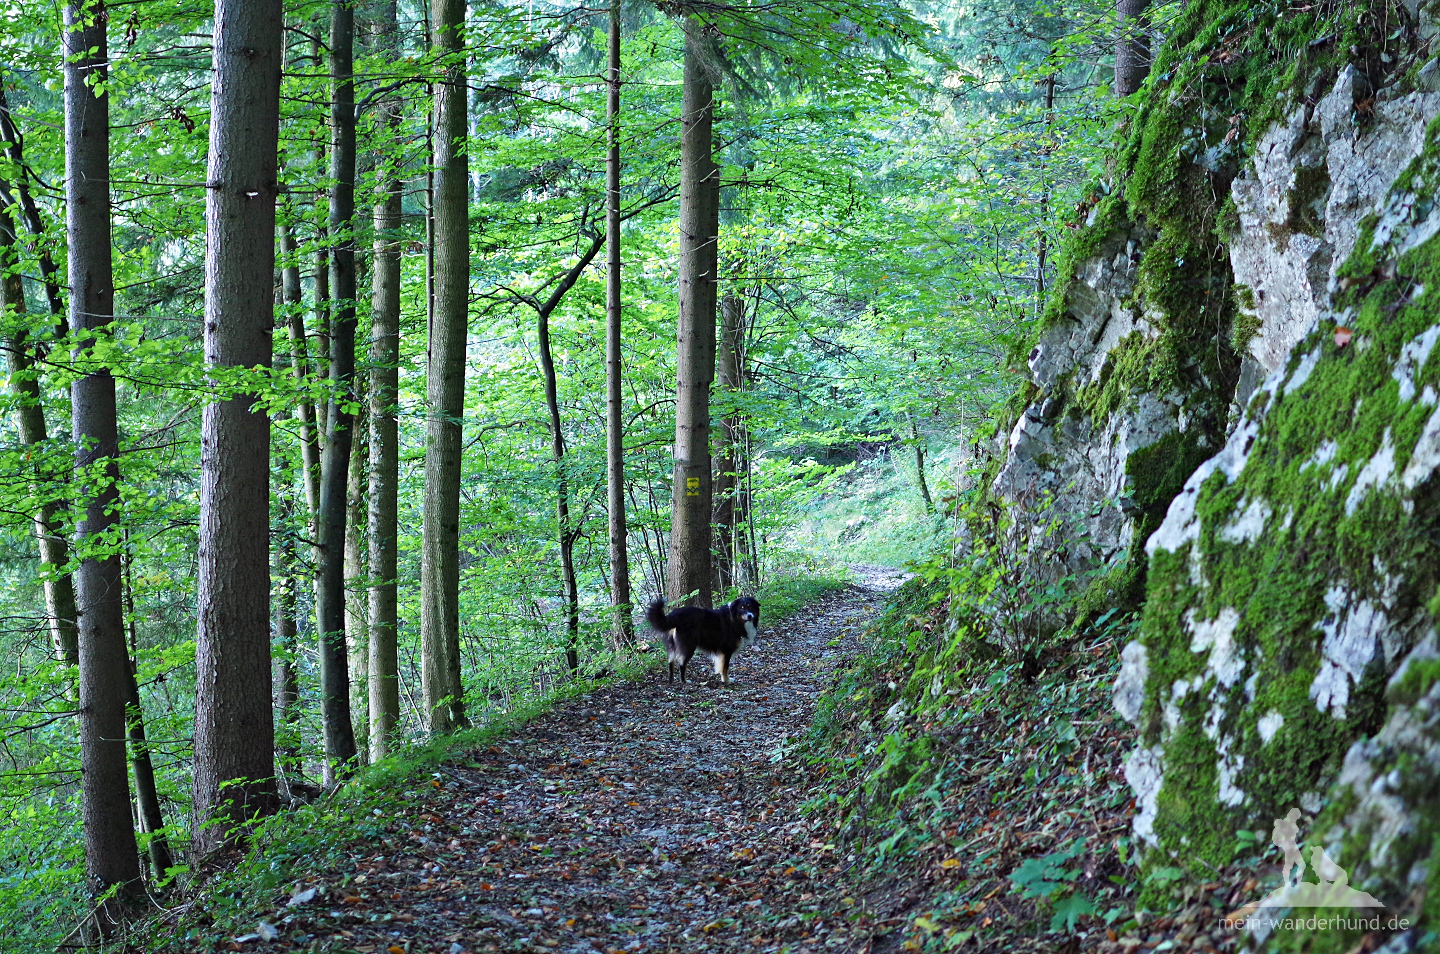 Idyllisch beginnt die Wanderung durch den Wald bei Freiweidach.